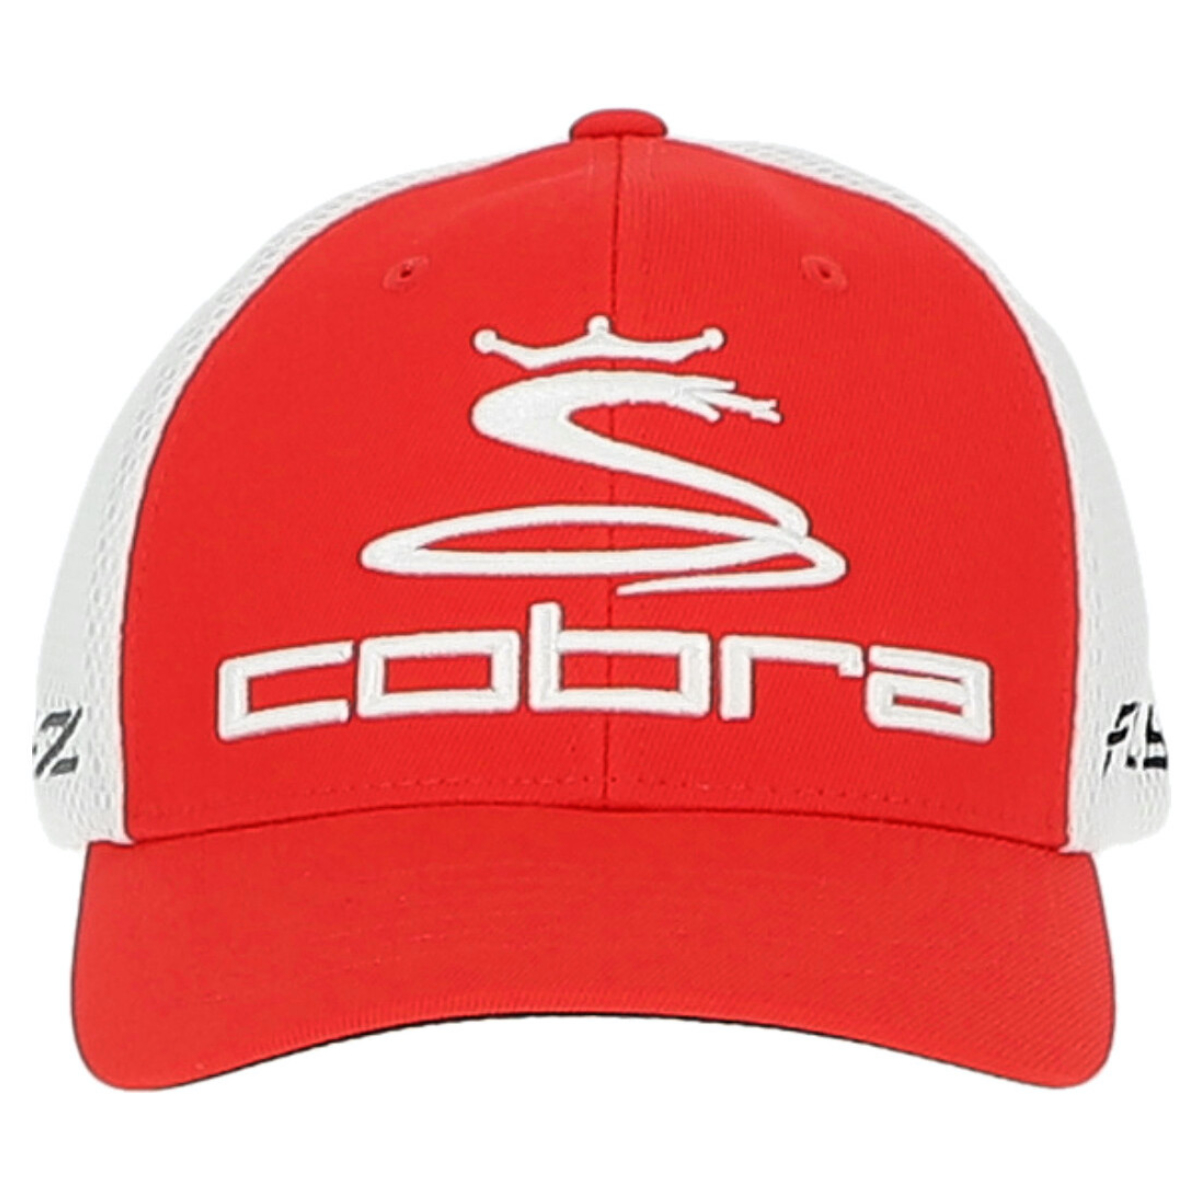 Cobra Cap Flexfit rot/weiß S/M